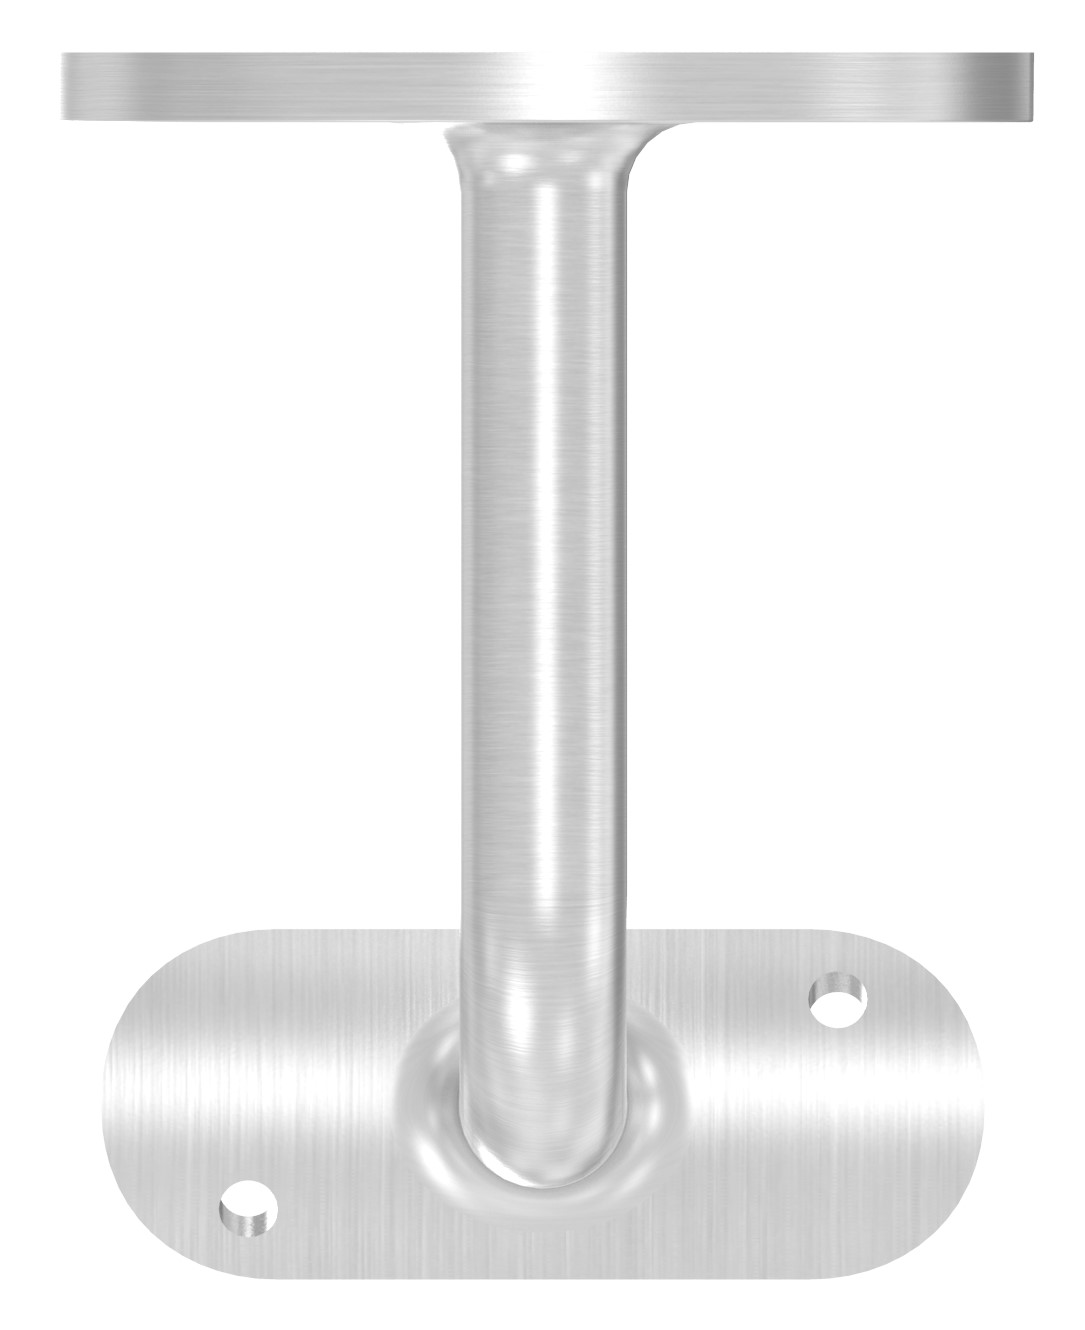 Handlaufhalter mit Handlaufanschlussplatte 42,4mm, (Ronde und Bügel verschweißt), V2A